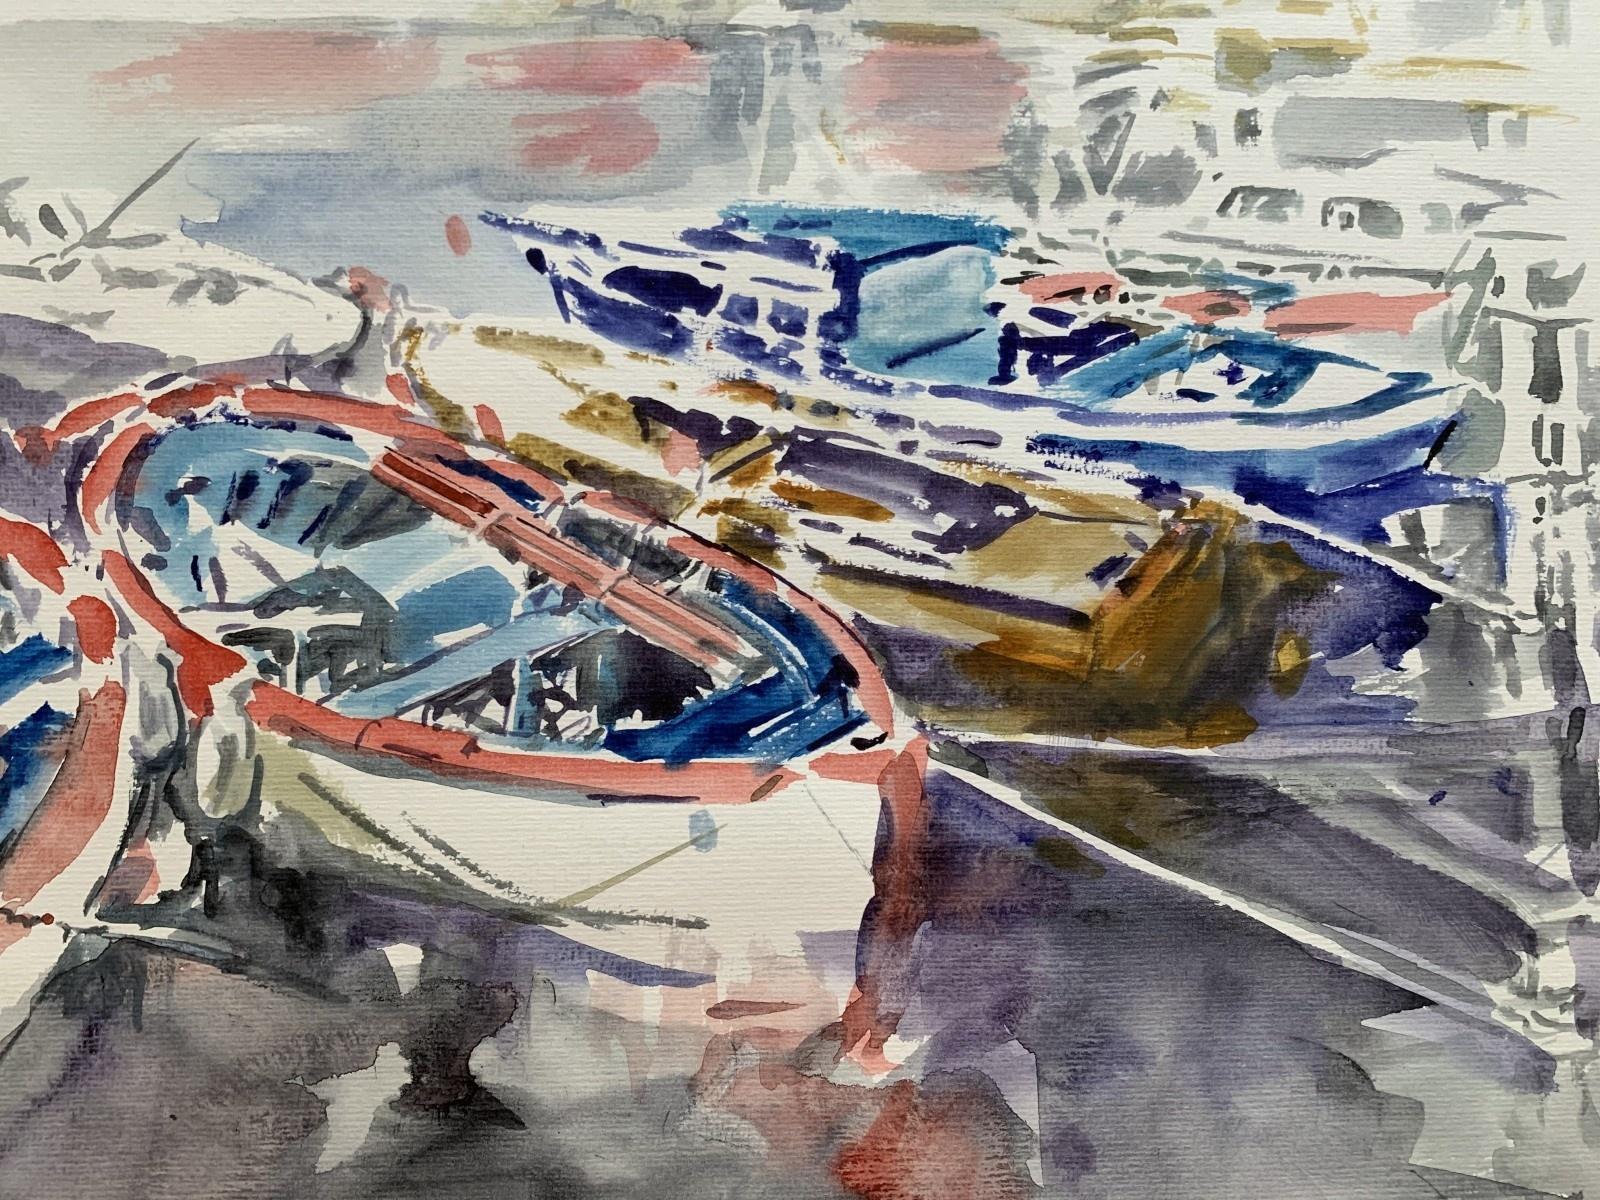 In a harbour. Watercolor, Realistic, Classic, Marine, Polish artist - Other Art Style Art by Włodzimierz Karczmarzyk